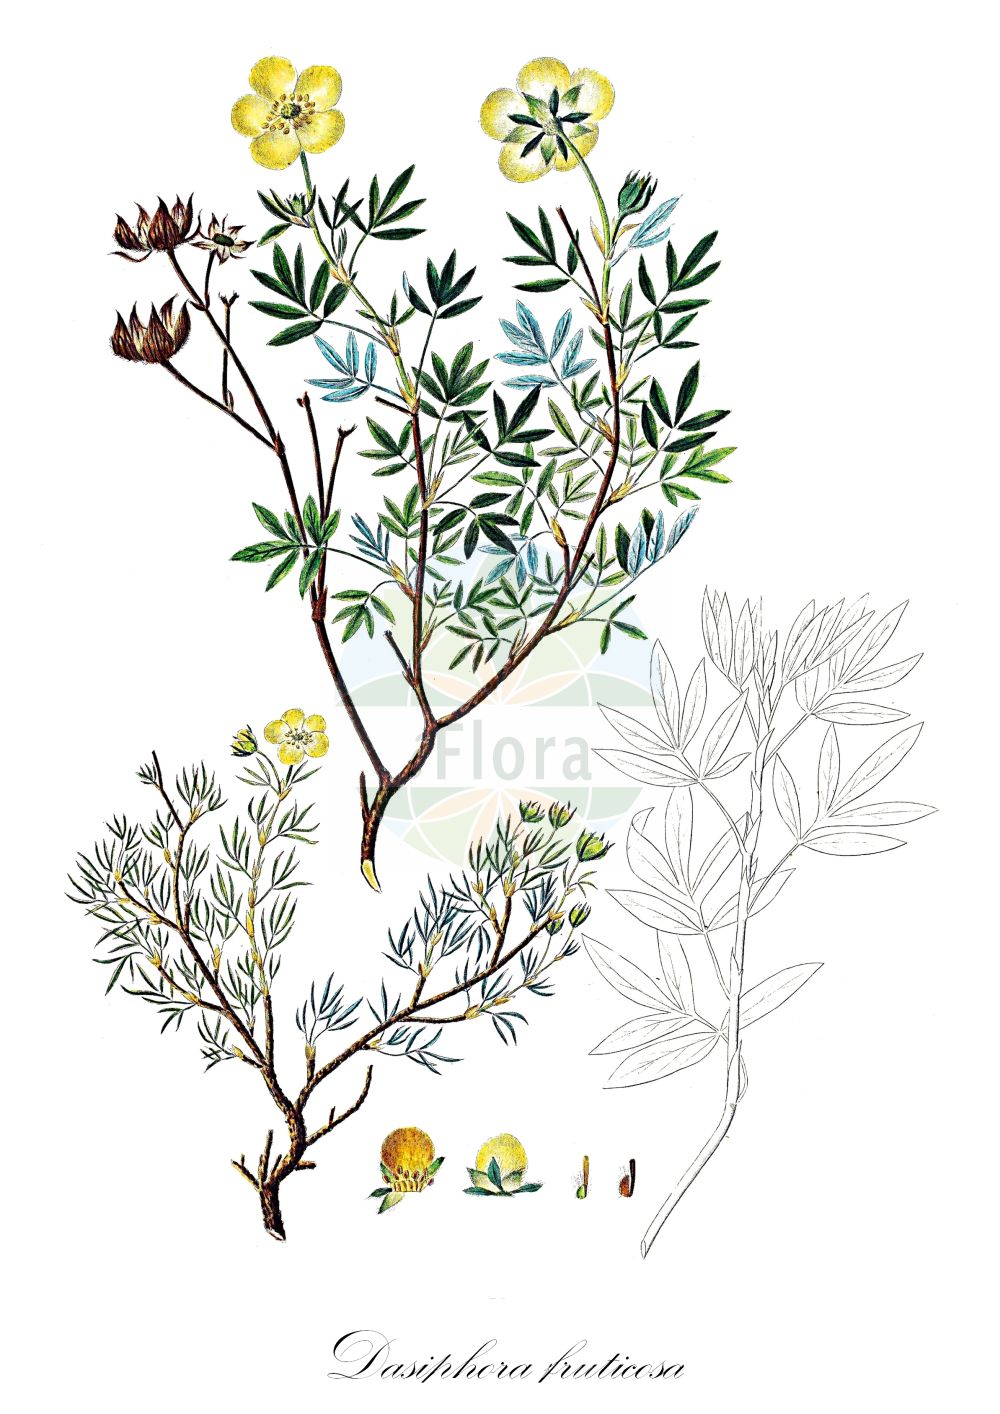 Historische Abbildung von Dasiphora fruticosa (Fingerstrauch - Shrubby Cinquefoil). Das Bild zeigt Blatt, Bluete, Frucht und Same. ---- Historical Drawing of Dasiphora fruticosa (Fingerstrauch - Shrubby Cinquefoil). The image is showing leaf, flower, fruit and seed.(Dasiphora fruticosa,Fingerstrauch,Shrubby Cinquefoil,Comocarpa fruticosa,Dasiphora floribunda,Dasiphora fruticosa,Dasiphora phyllocalyx,Dasiphora riparia,Fragaria fruticosa,Pentaphylloides floribunda,Pentaphylloides fruticosa,Pentaphylloides phyllocalyx,Potentilla floribunda,Potentilla loureironis,Potentilla phyllocalyx,Tormentilla fruticosa,Potentilla fruticosa,Fingerstrauch,Fuenffingerstrauch,Nordischer Fingerstrauch,Shrubby Cinquefoil,Dasiphora,Fingerstrauch,Shrubby Cinquefoil,Rosaceae,Rosengewächse,Rose family,Blatt,Bluete,Frucht,Same,leaf,flower,fruit,seed,Oeder (1761-1883))